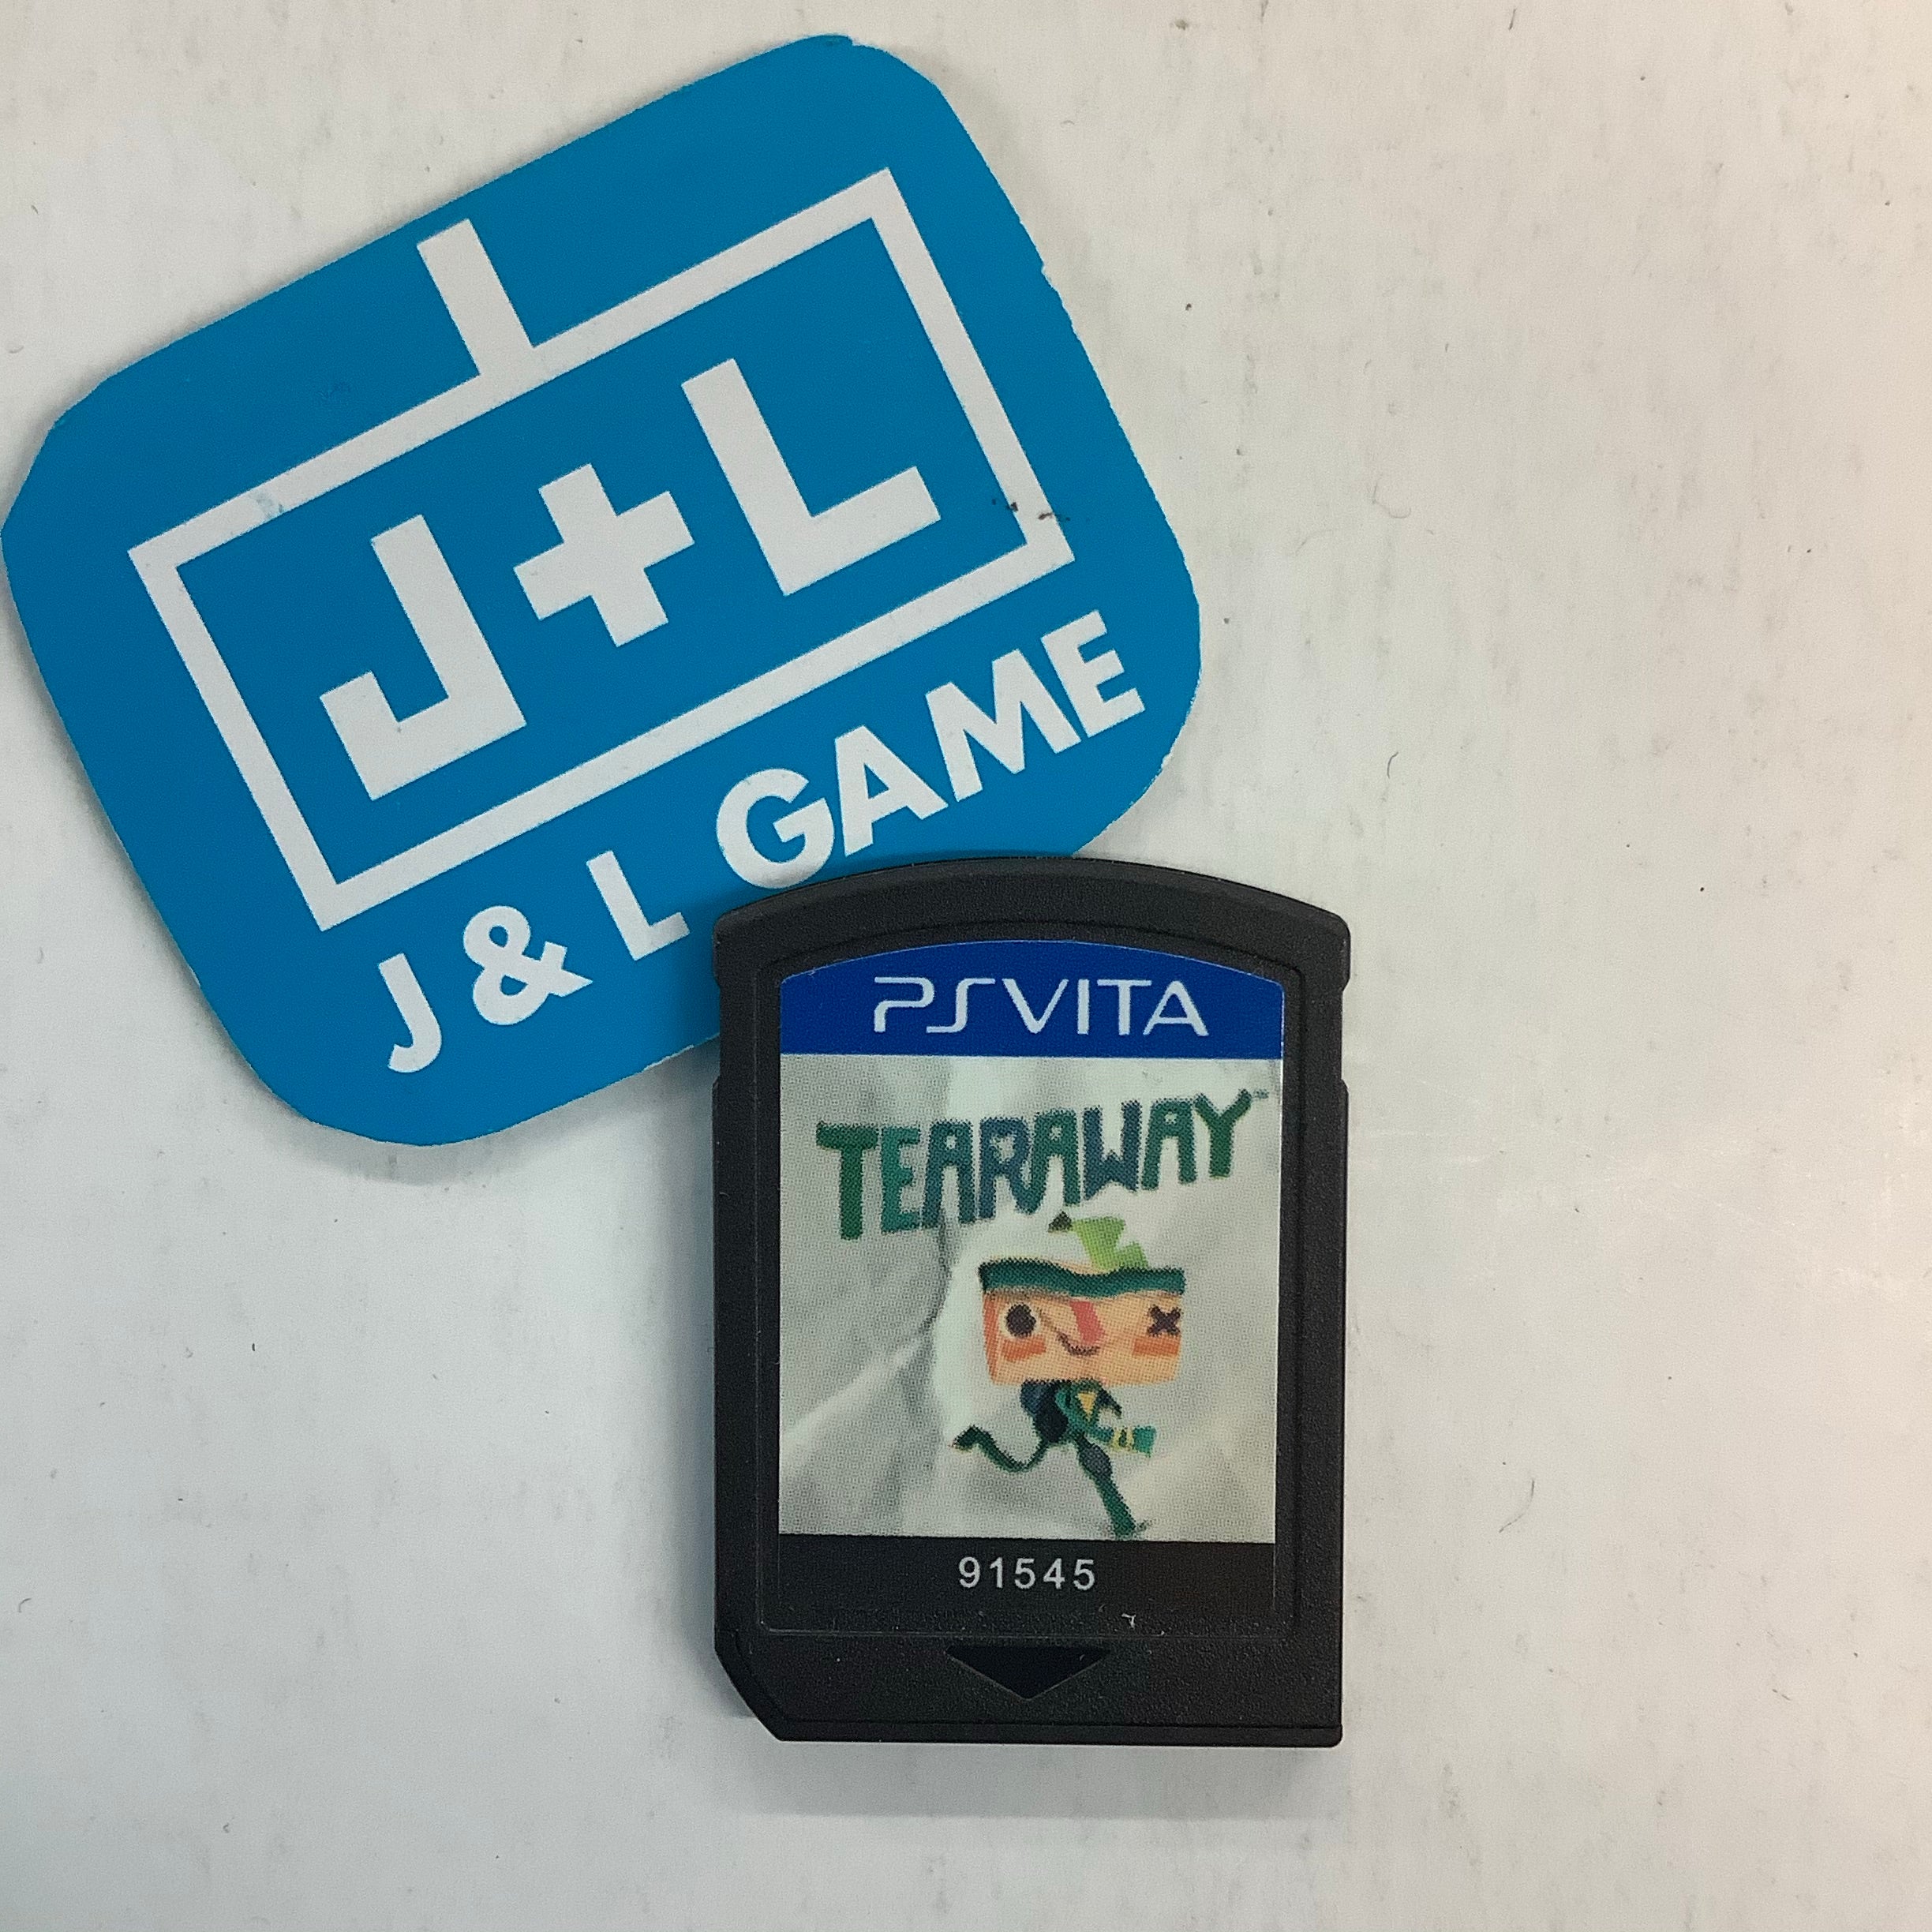 Tearaway - (PSV) PlayStation Vita [Pre-Owned] Video Games SCEA   